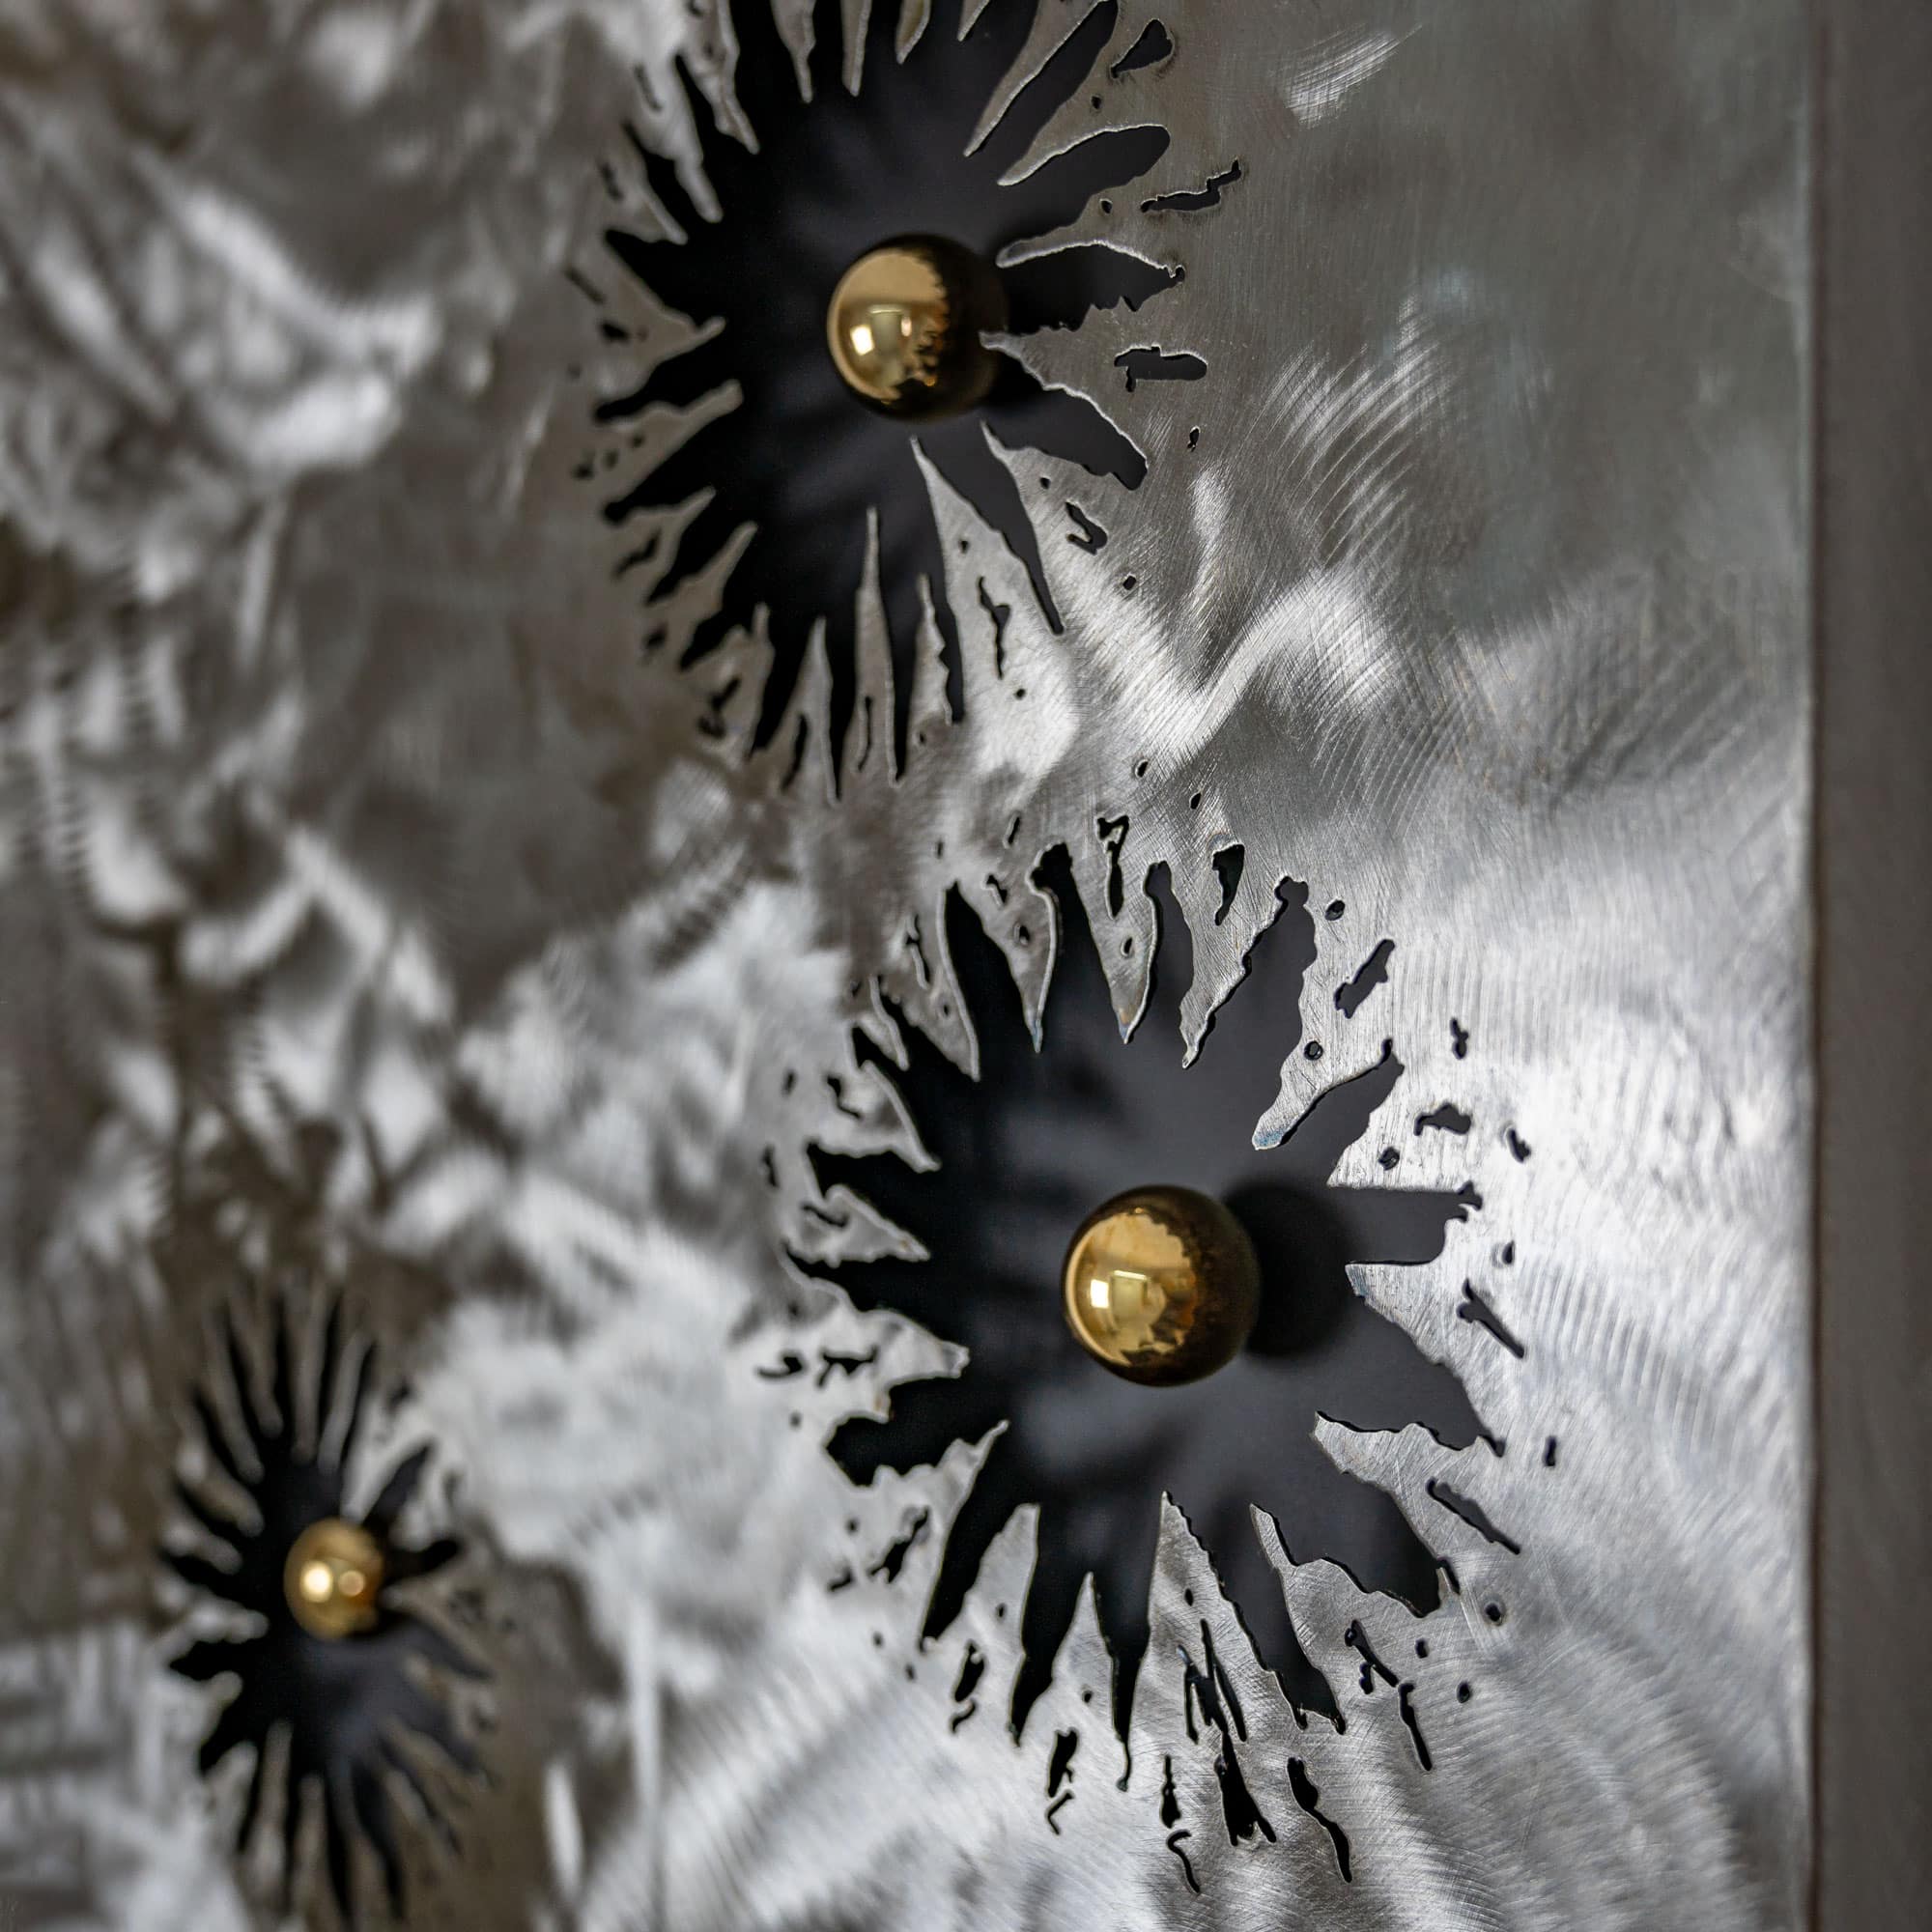 Kunstwerk mit dem Namen „Plasma 40“. 3 Kugeln 24 Karat vergoldet, Oberfläche Metall grob geschliffen. Vom Stahlbildhauer im Atelier Daniel Springer